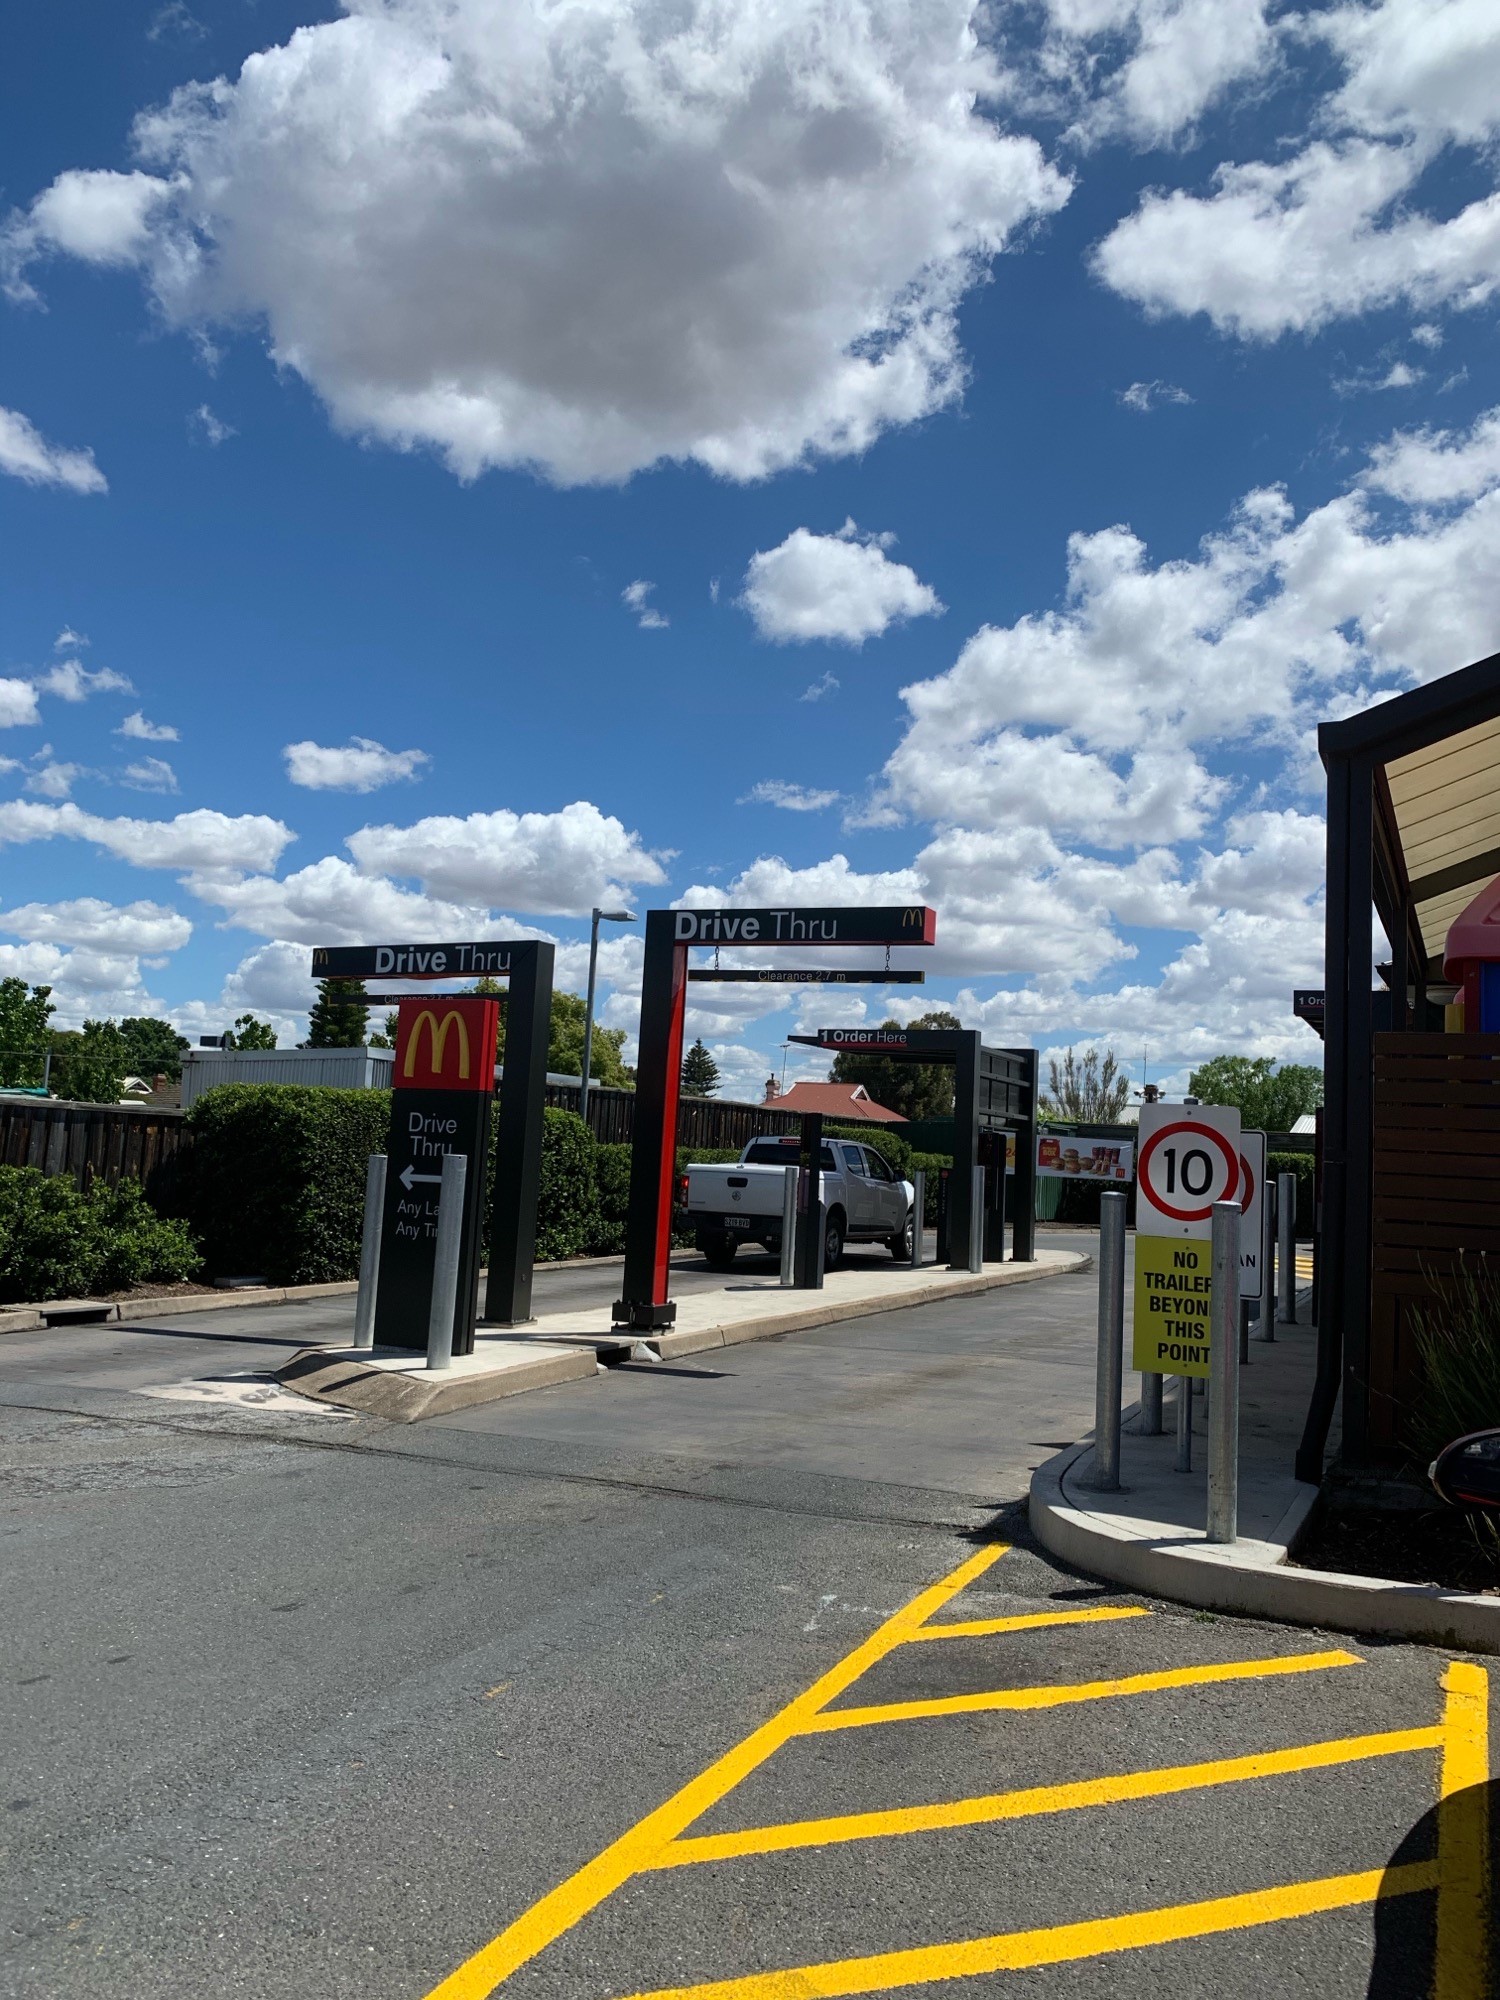 McDonalds Murray Bridge Drive Thru Lane Refurbishment | MYKRA